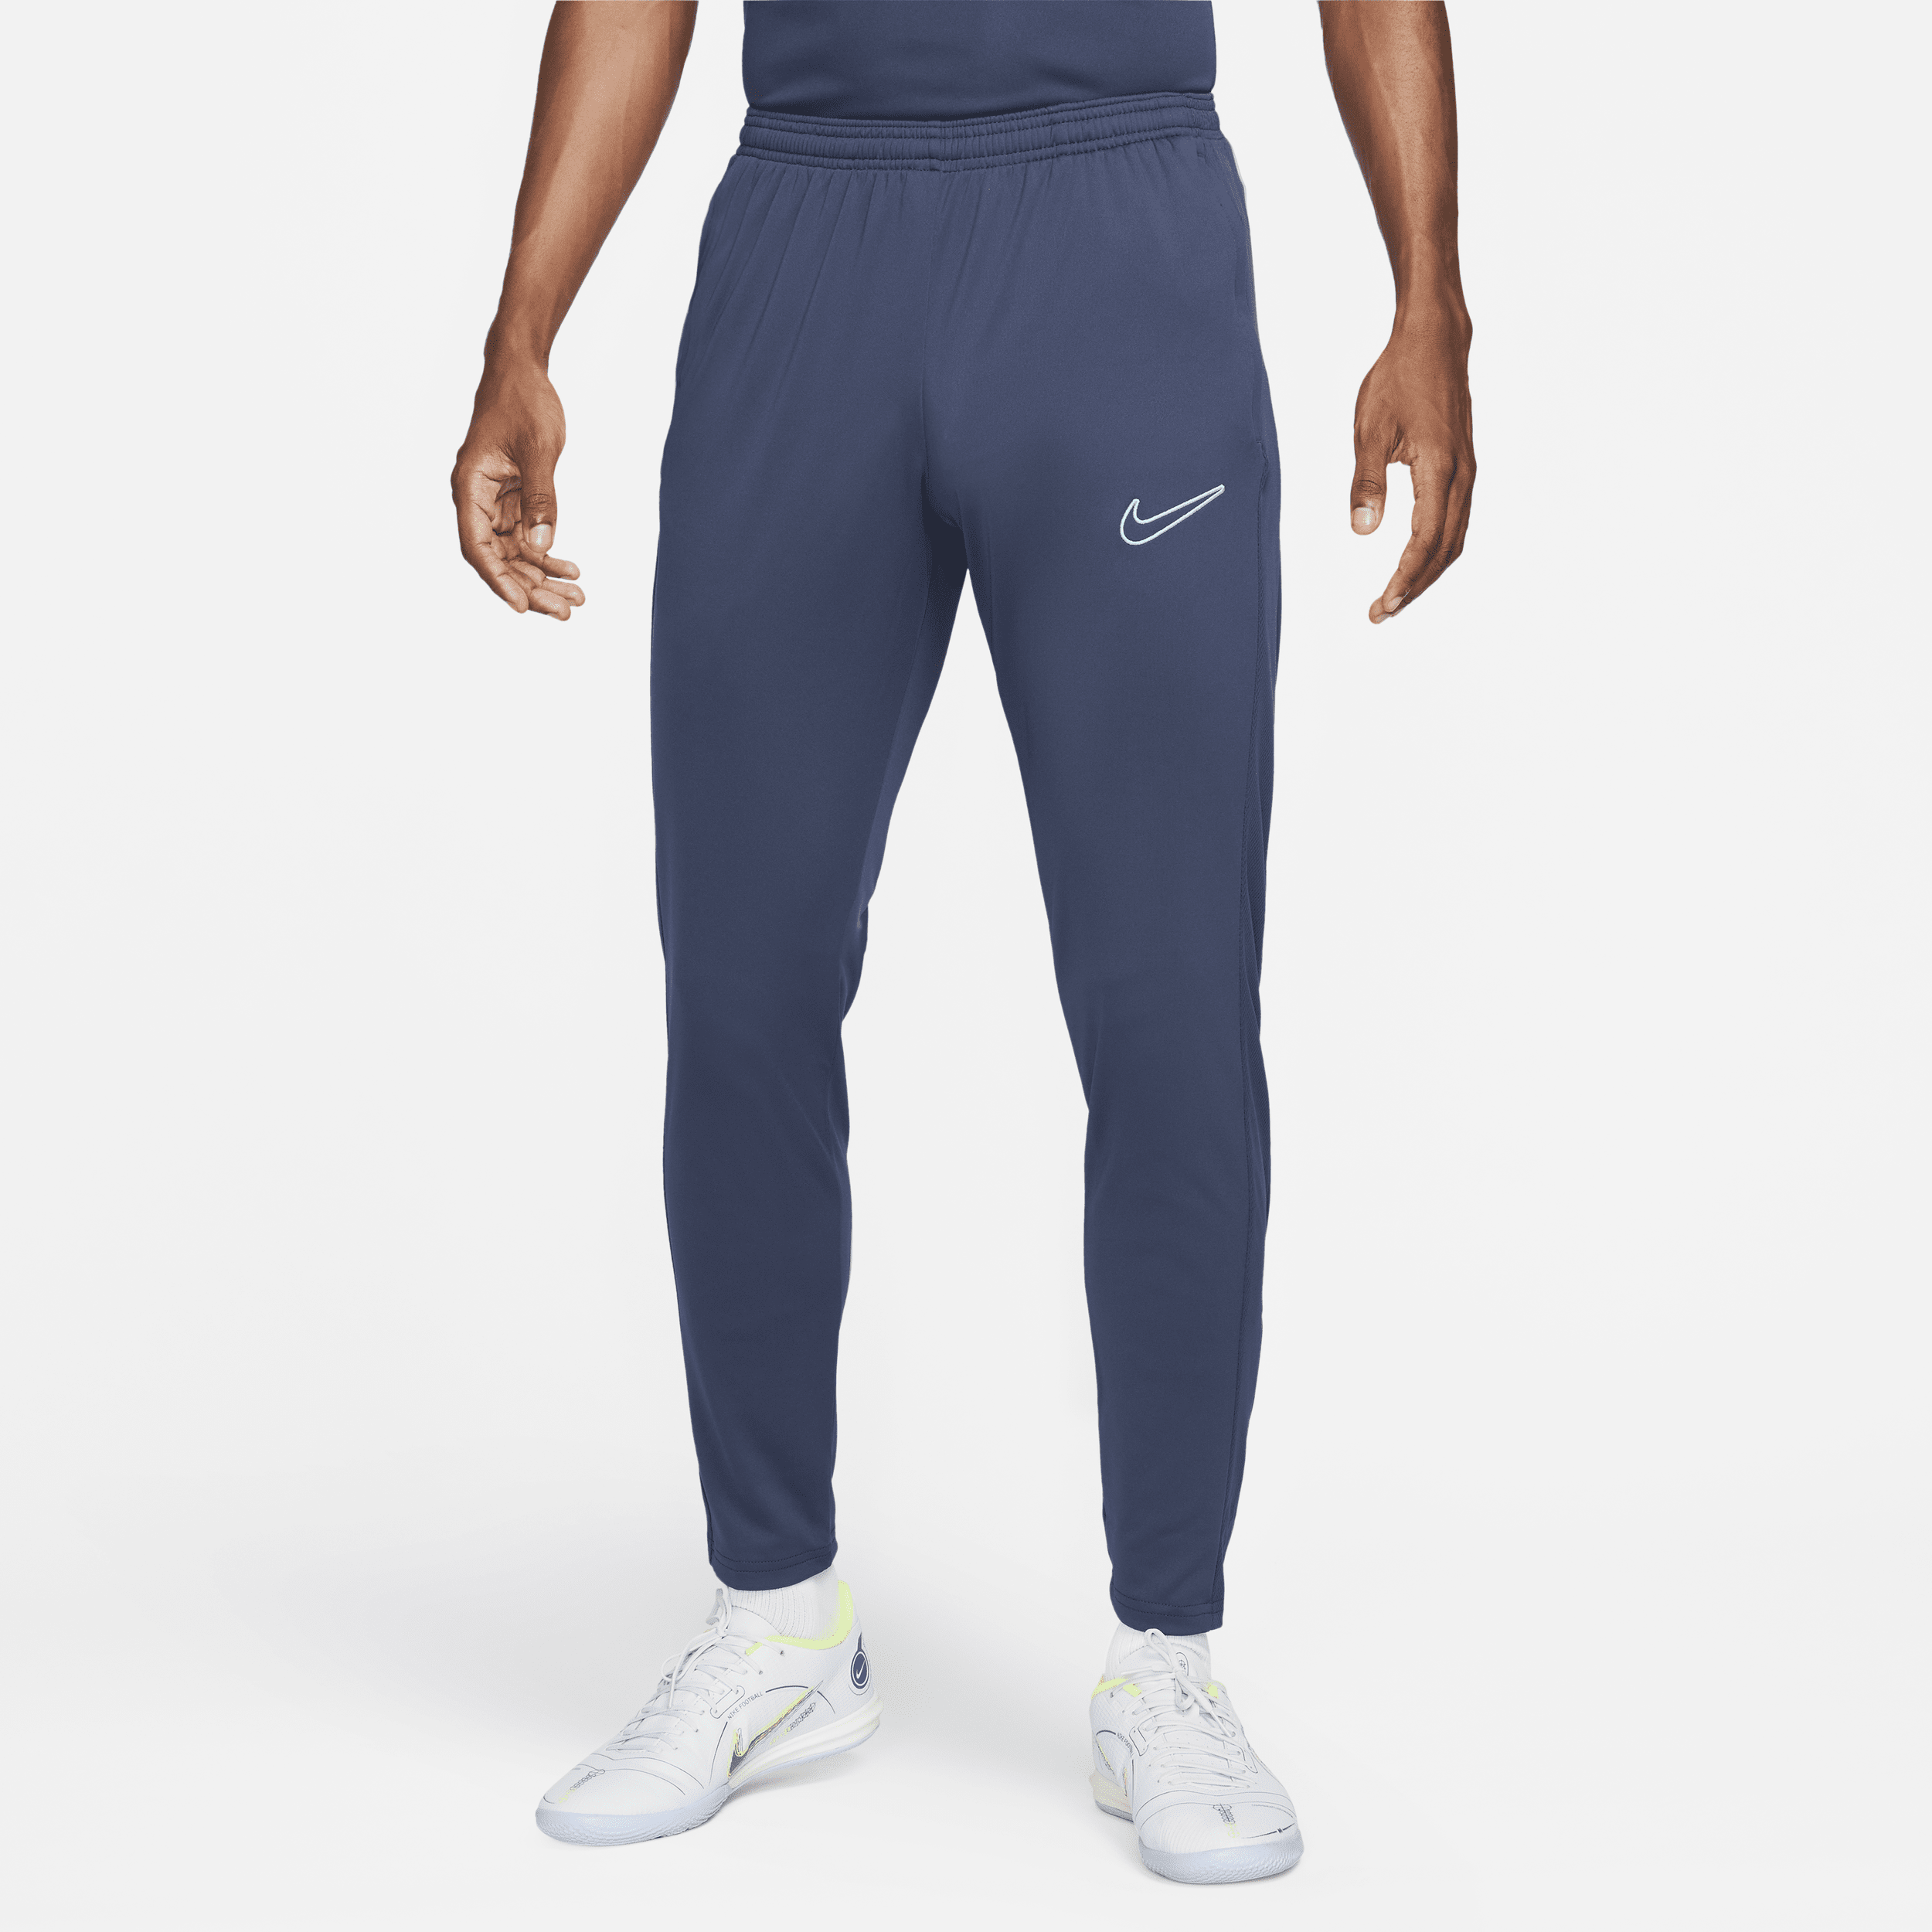 Nike Dri-FIT Academy-fodboldbukser til mænd - blå